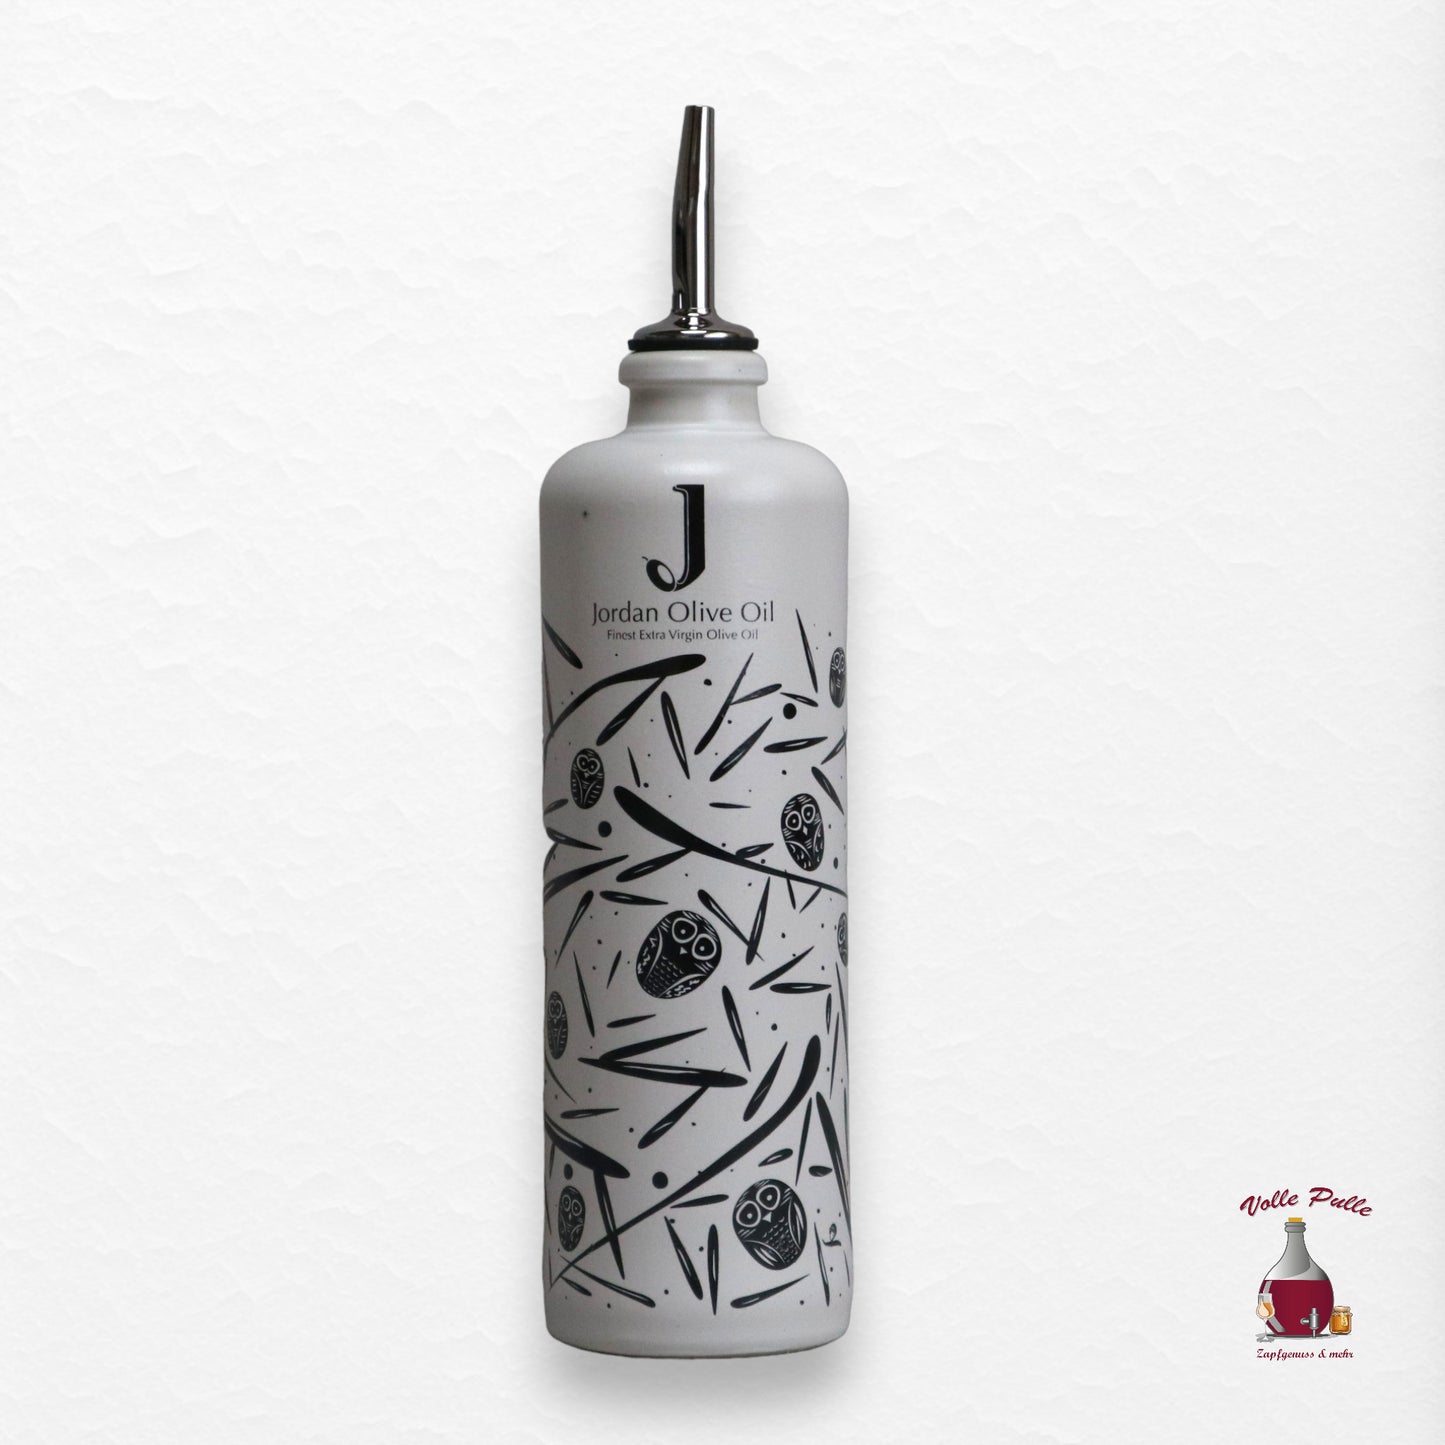 Jordan Keramikflasche - matt weiß mit schwarzen Symbolen - inkl. Ausgießer - 500ml